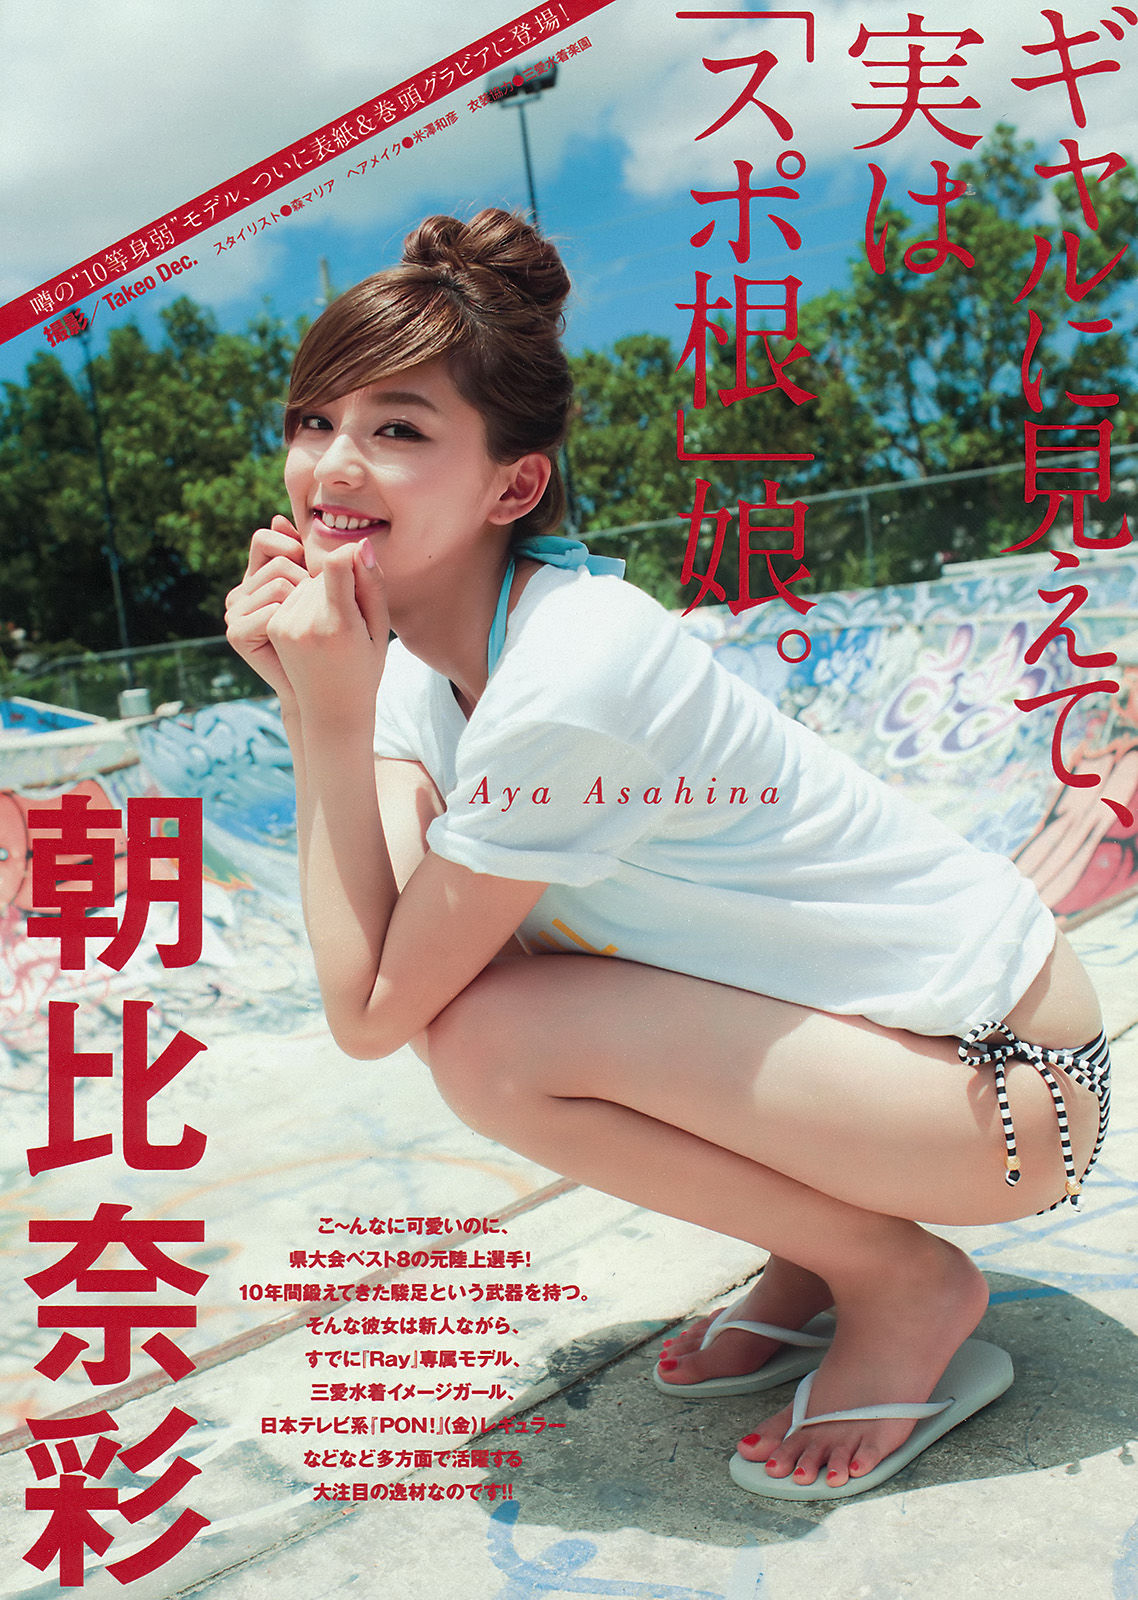 [Young Magazine] Asahina Aya Hisamatsu Yumi Tomaru Sayaka 2015 No.32 Photo Magazine Page 3 No.6b8869